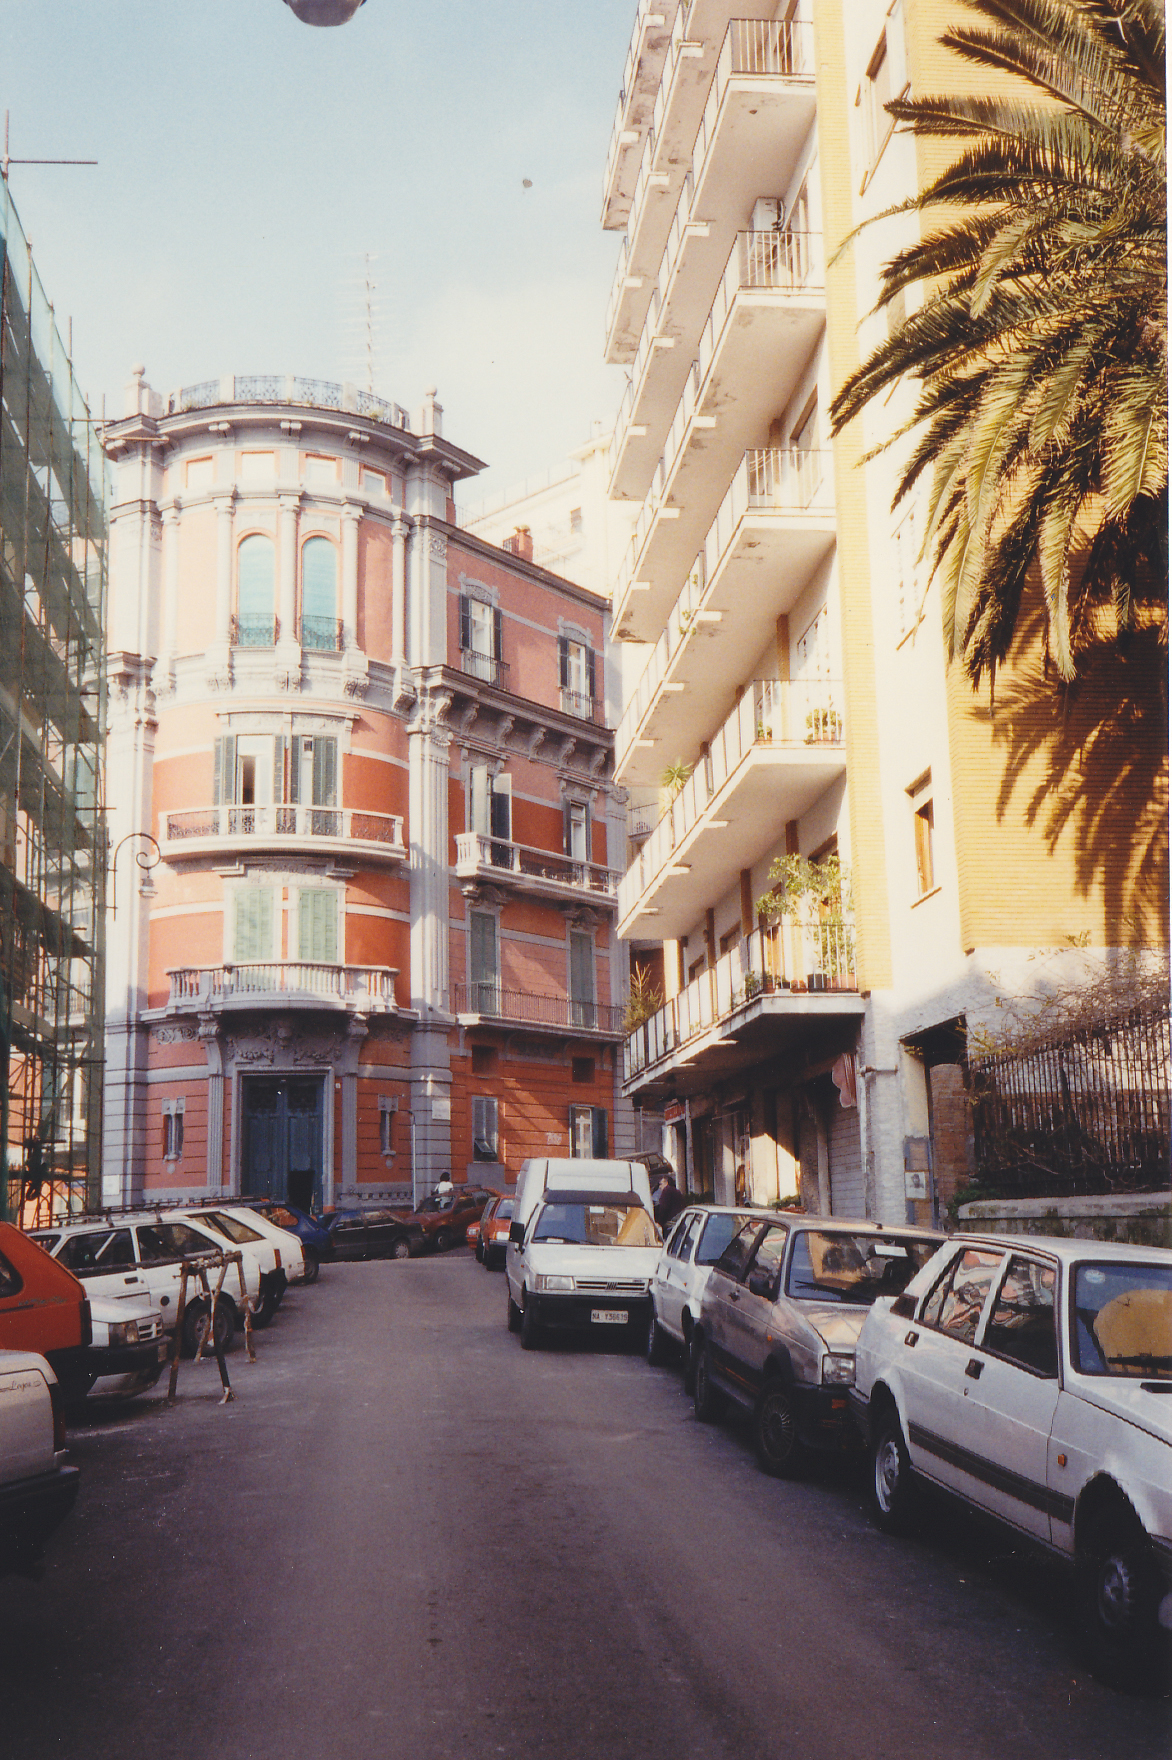 ignota - via Michetti, 4 (palazzo, residenziale) - Napoli (NA)  (XX)